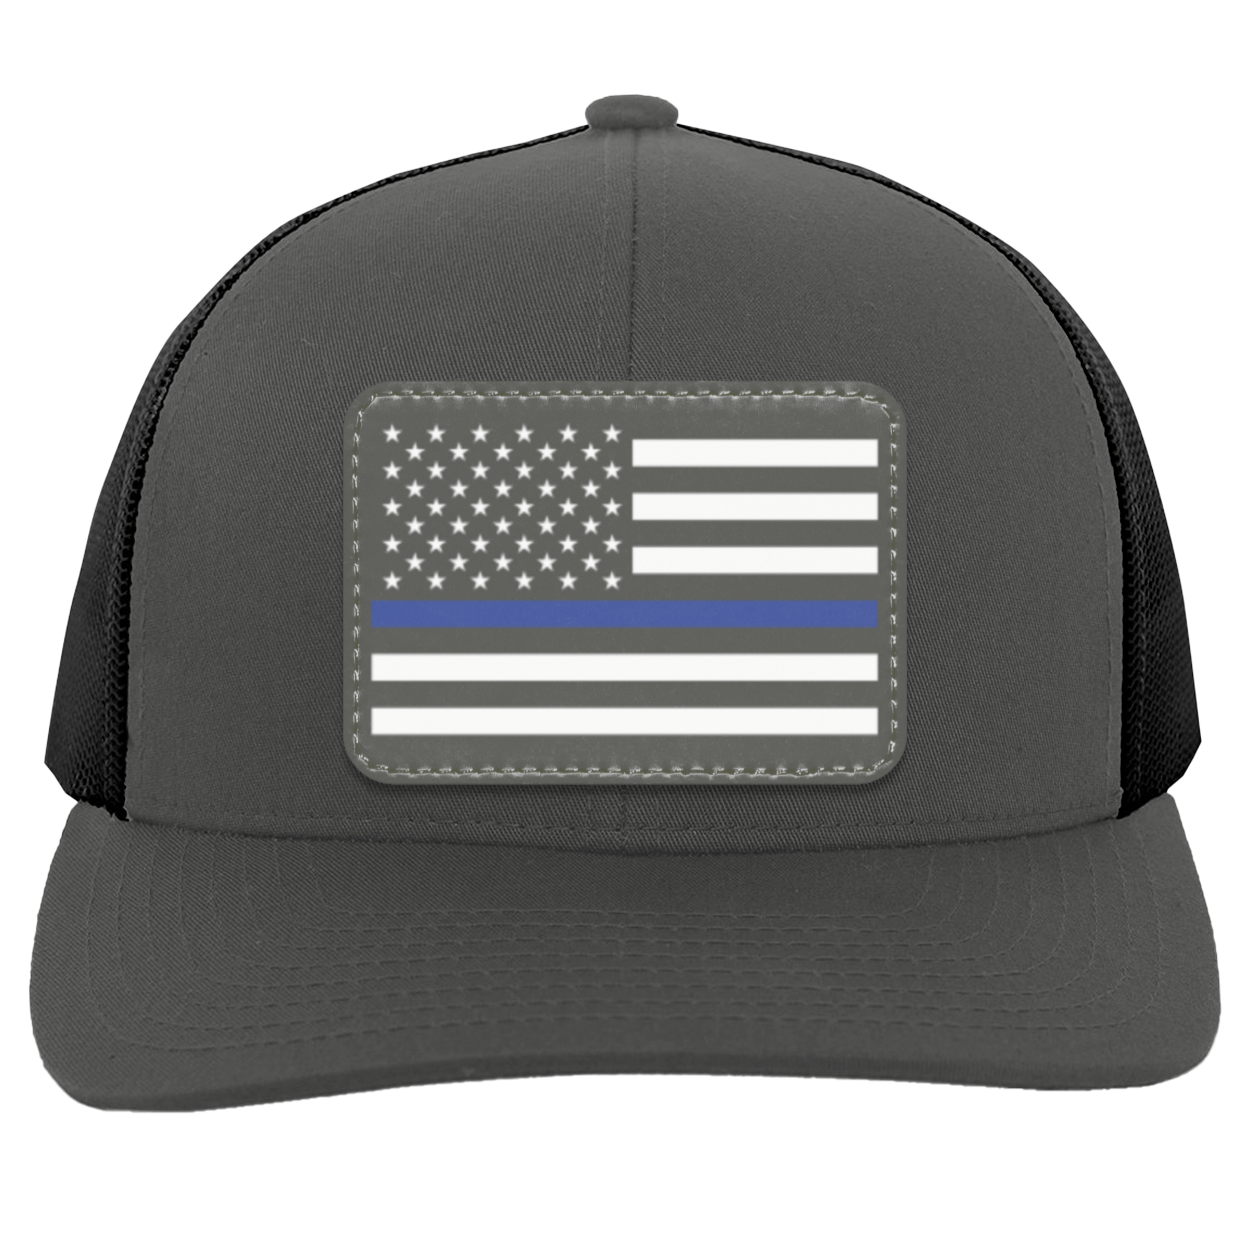 Patriot Caps